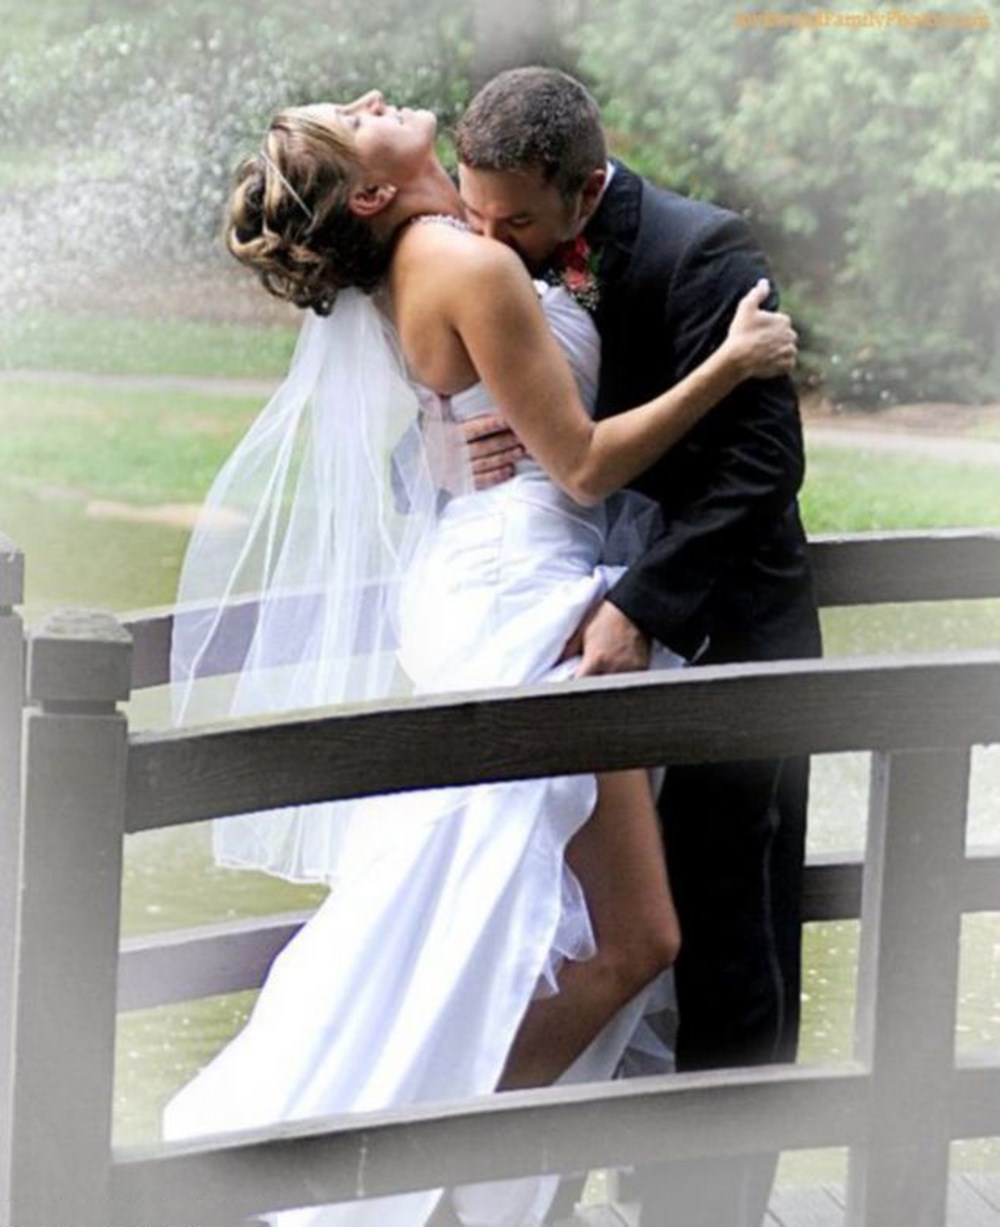 свадьба целуются фото